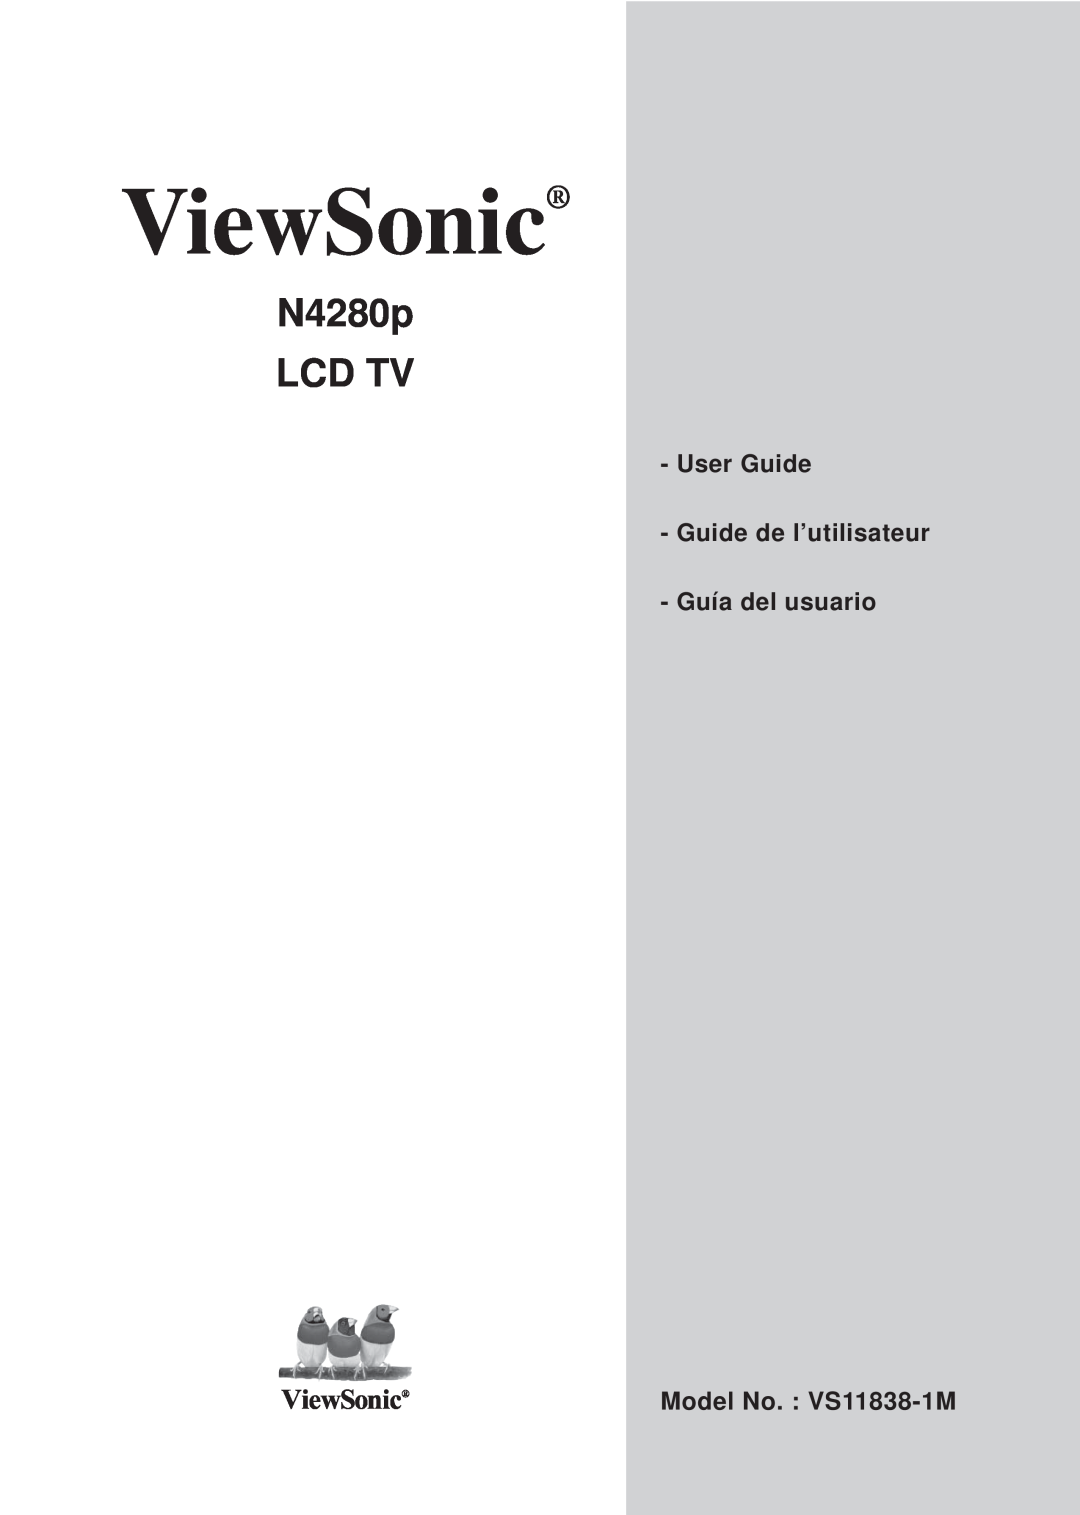 ViewSonic manual User Guide Guide de l’utilisateur Guía del usuario, ViewSonic, N4280p LCD TV, Model No. VS11838-1M 